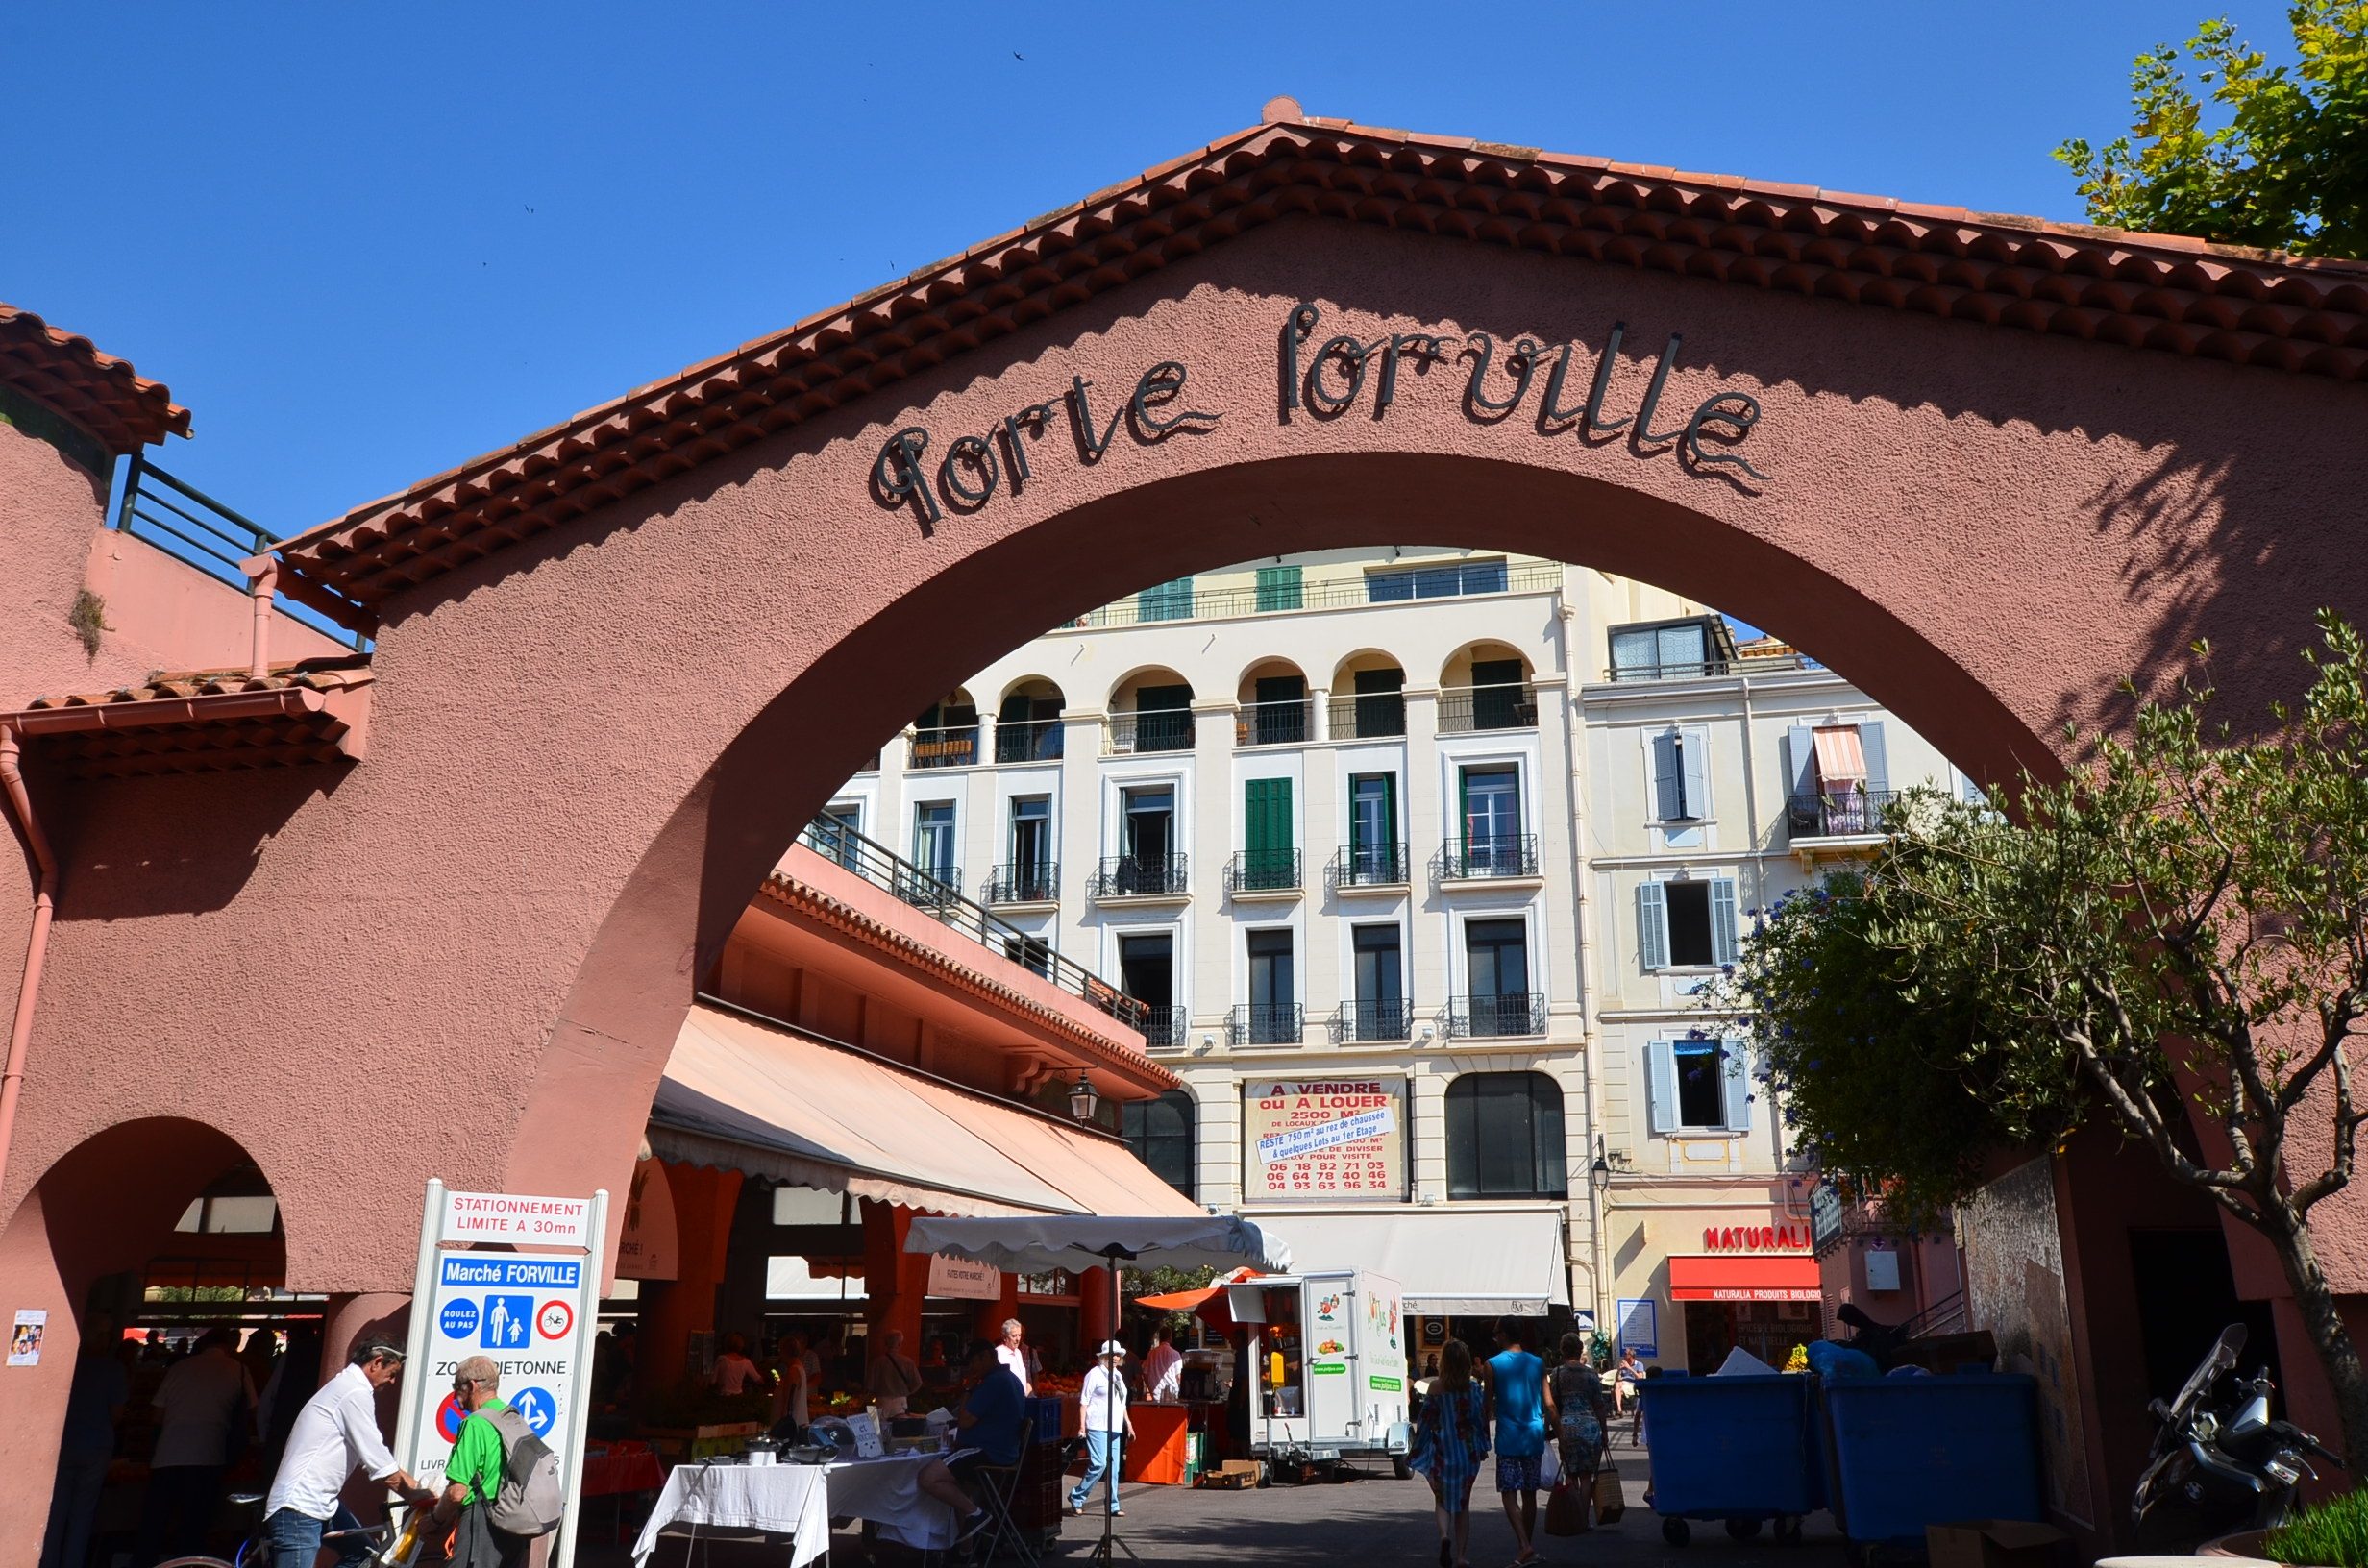 Cannes et l'archipel de Lérins: porte du marché Forville de Cannes: aufildeslieux.fr©K.HIBBSPorte Foreville